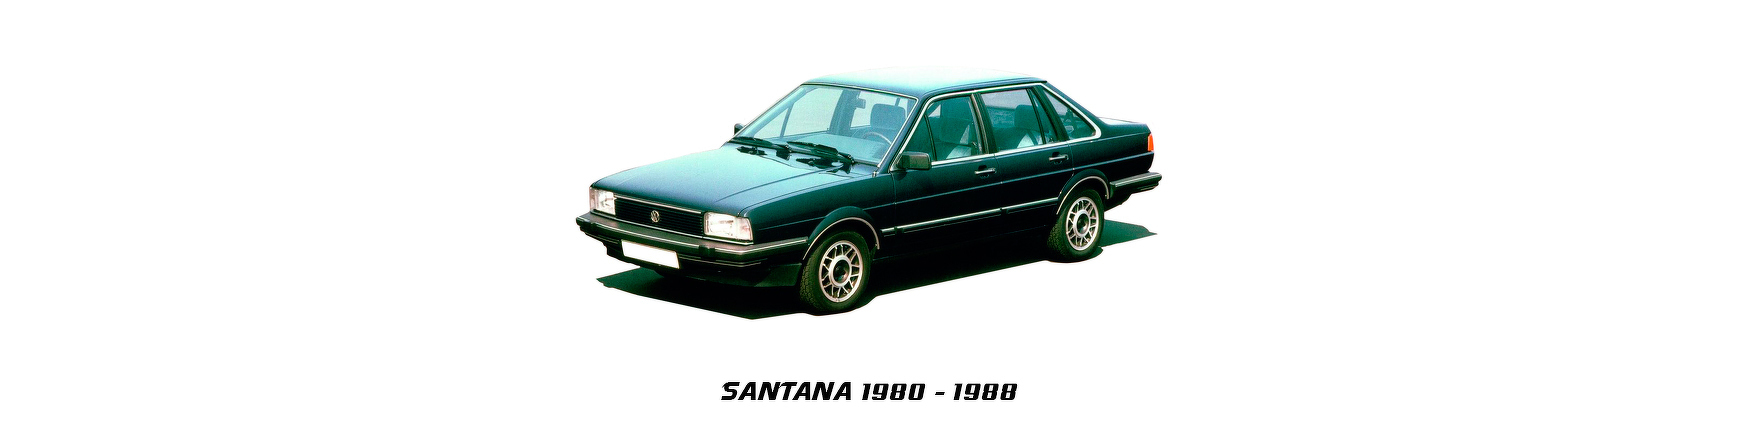 volkswagen vw santana 1981 1982 1983 1984